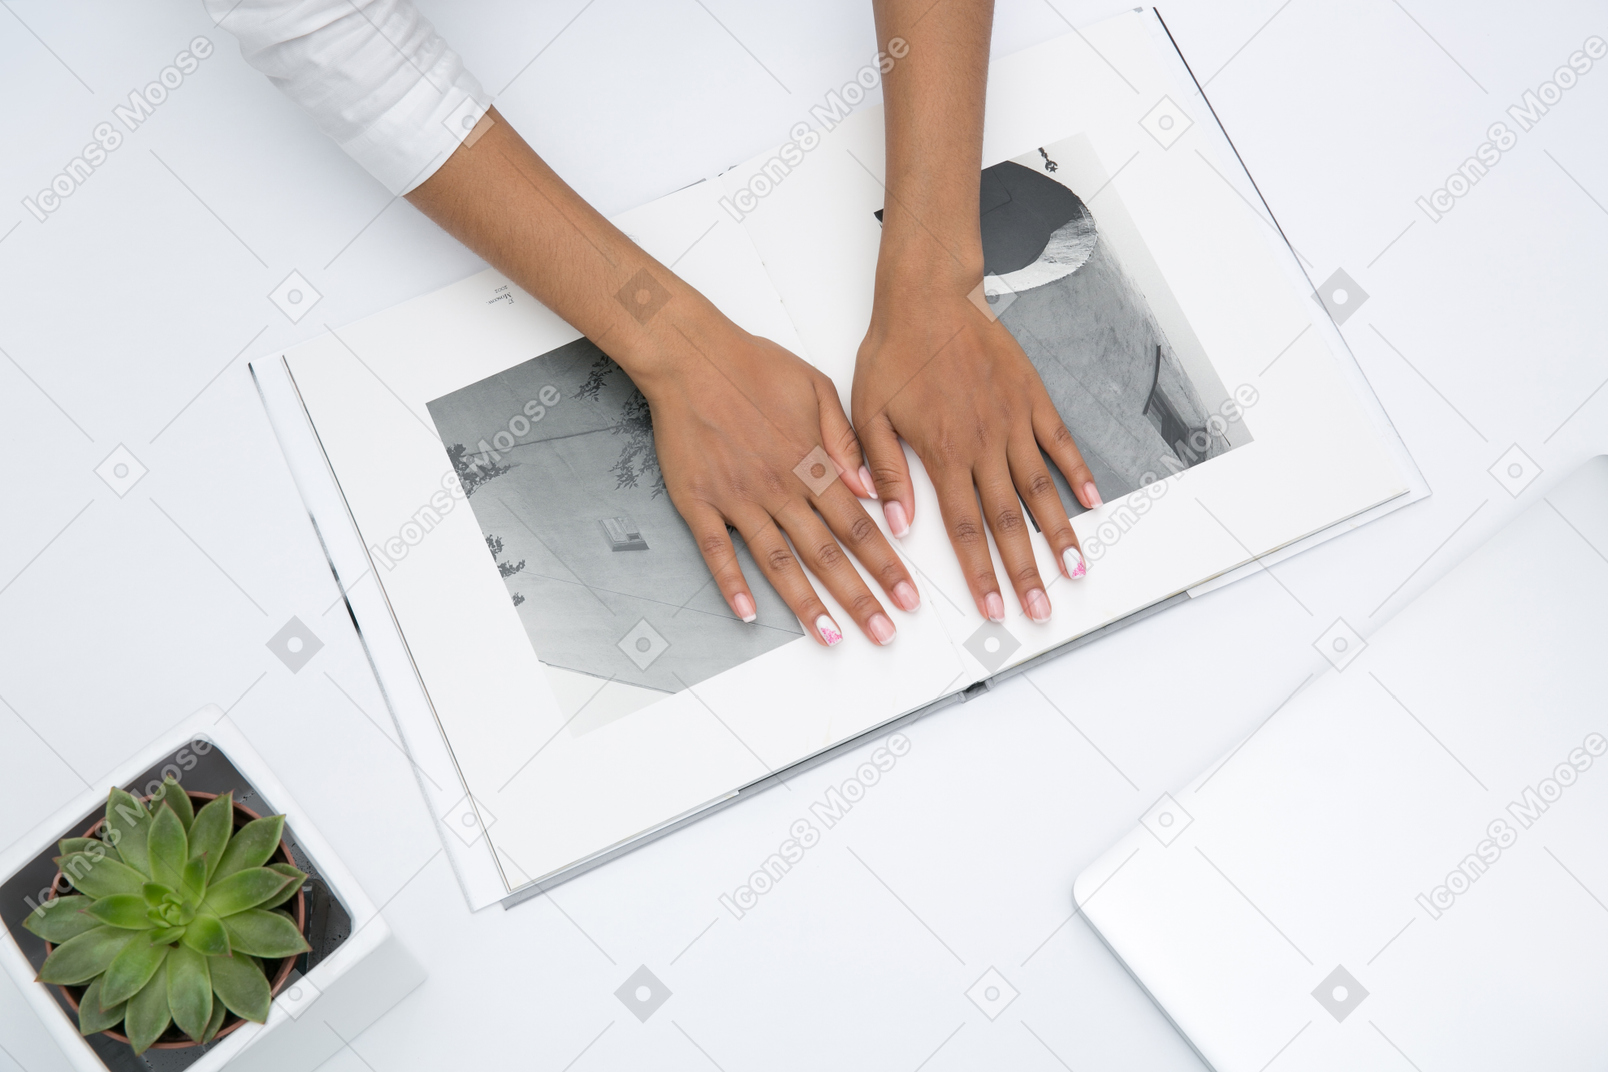 Frauenhänden auf dem fotoalbum liegen